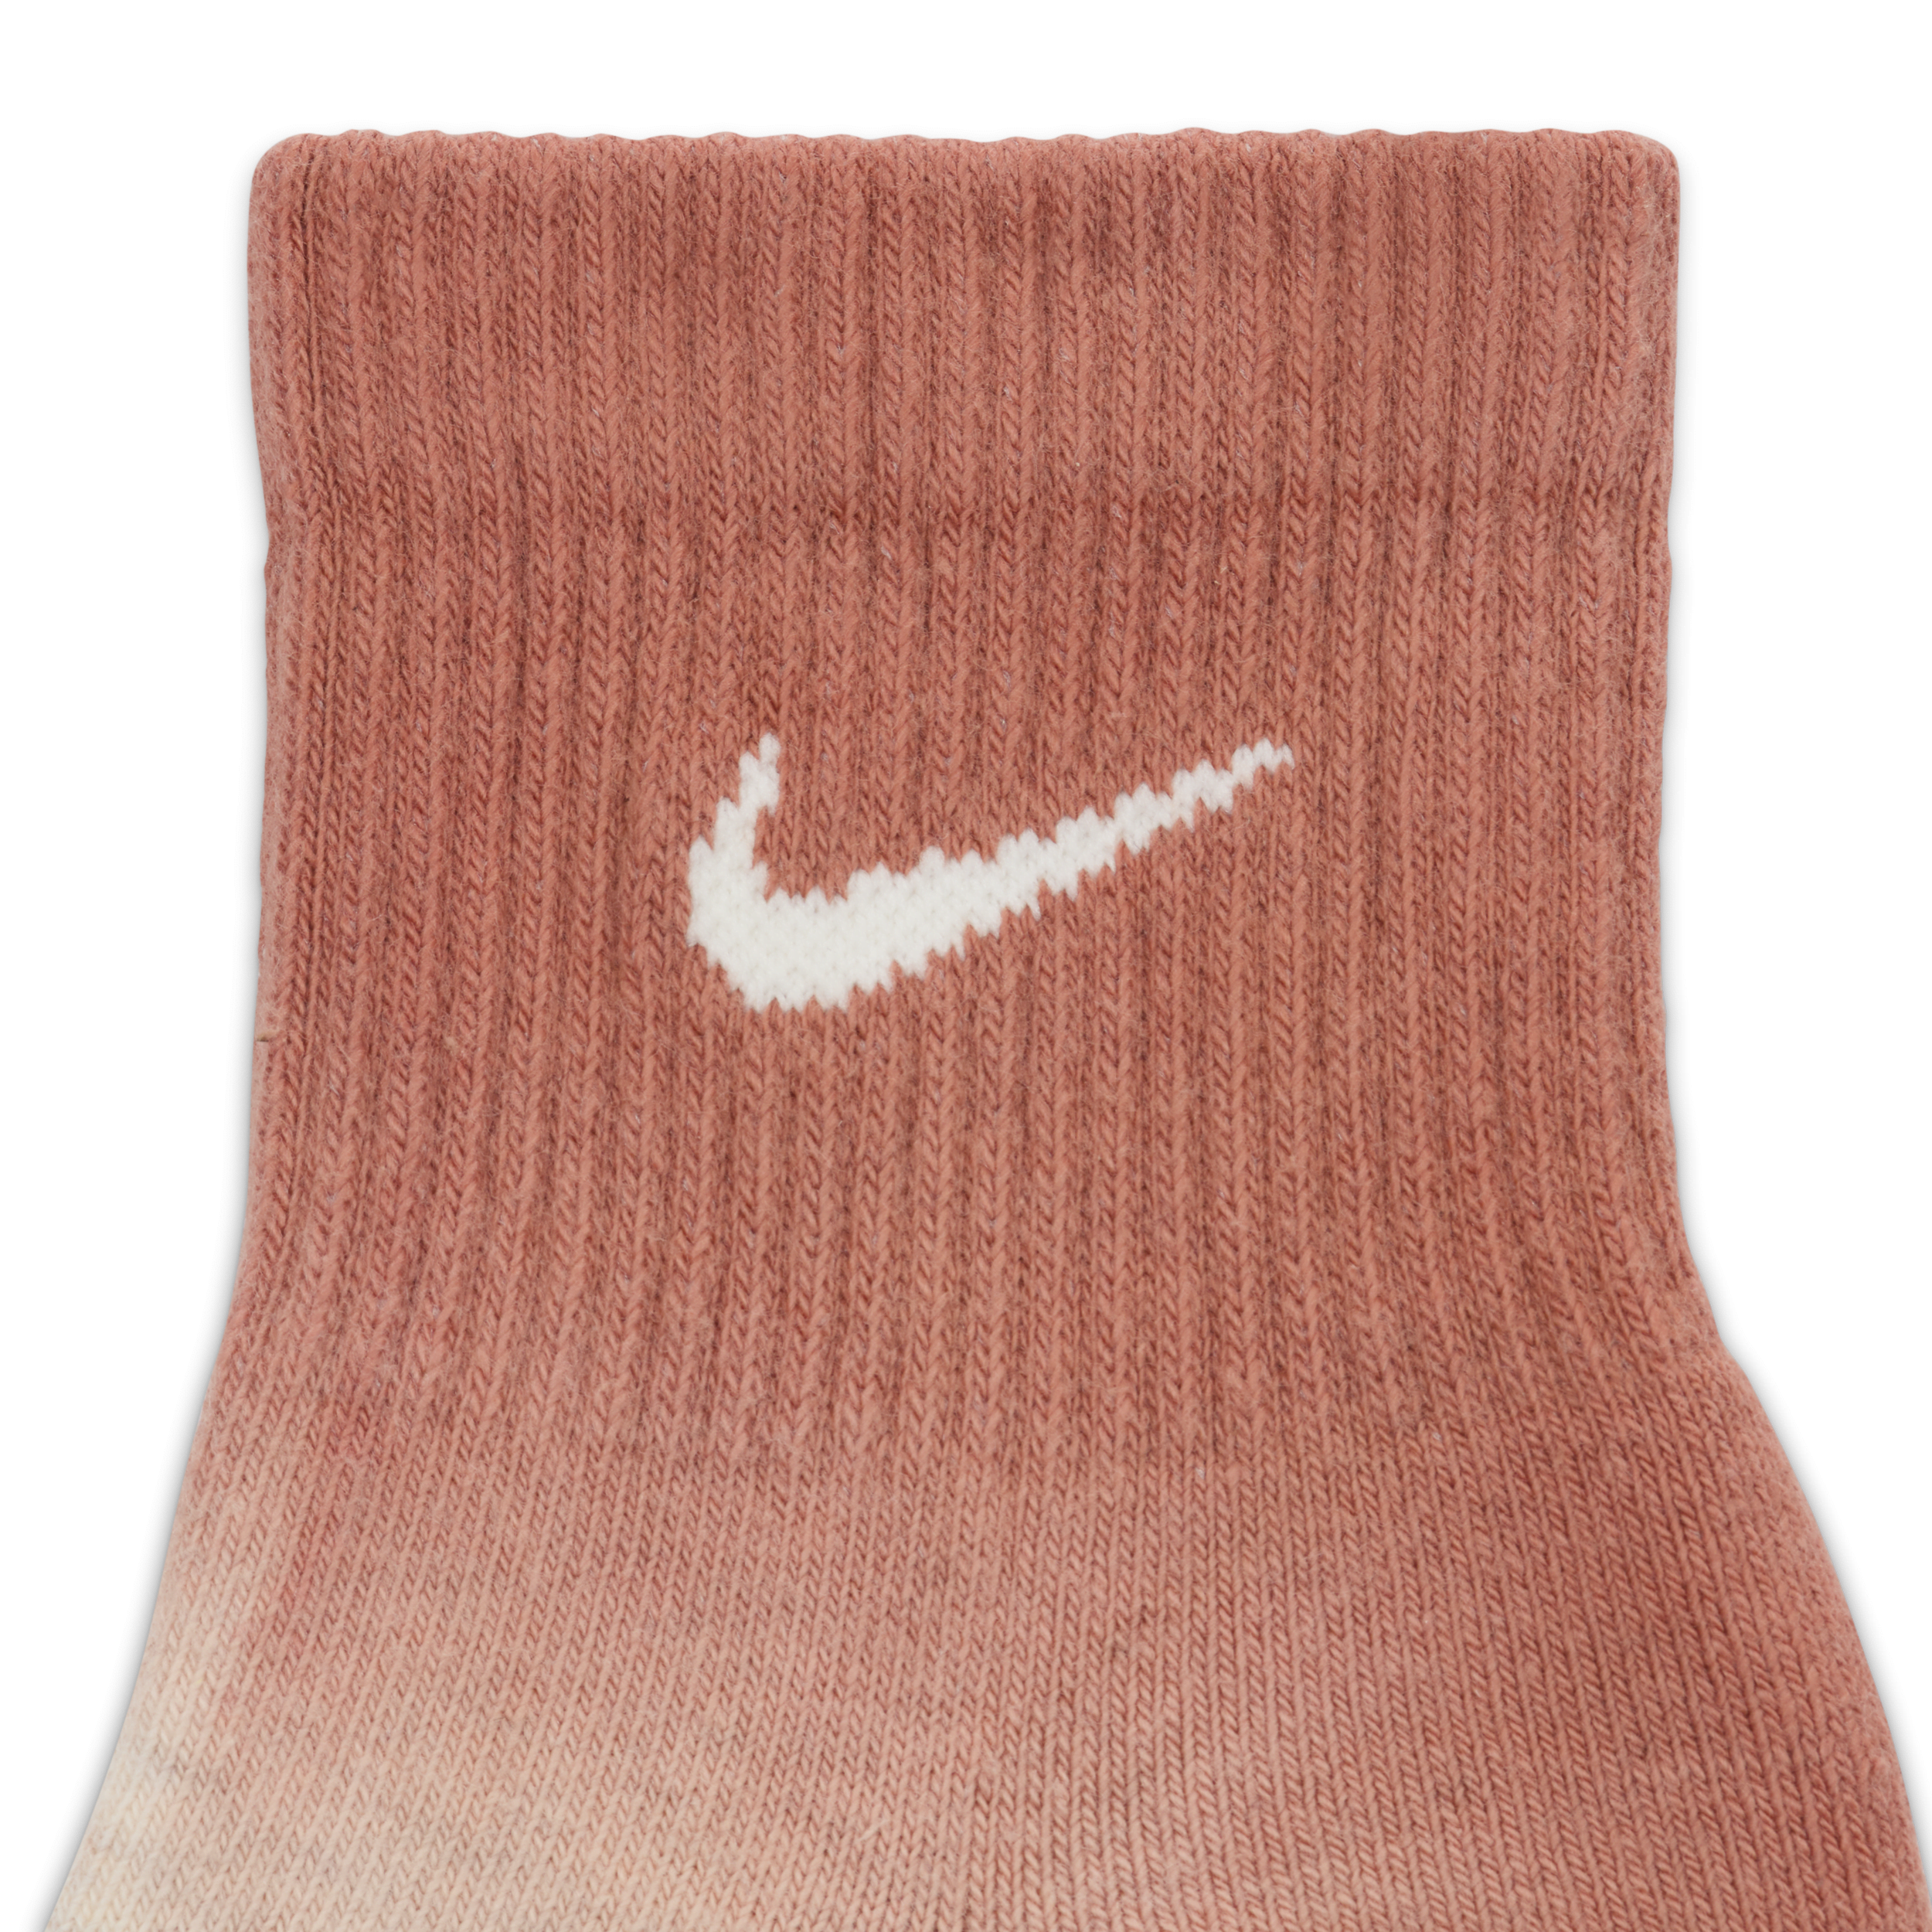 Nike Everyday Plus enkelsokken met demping (2 paar) Meerkleurig